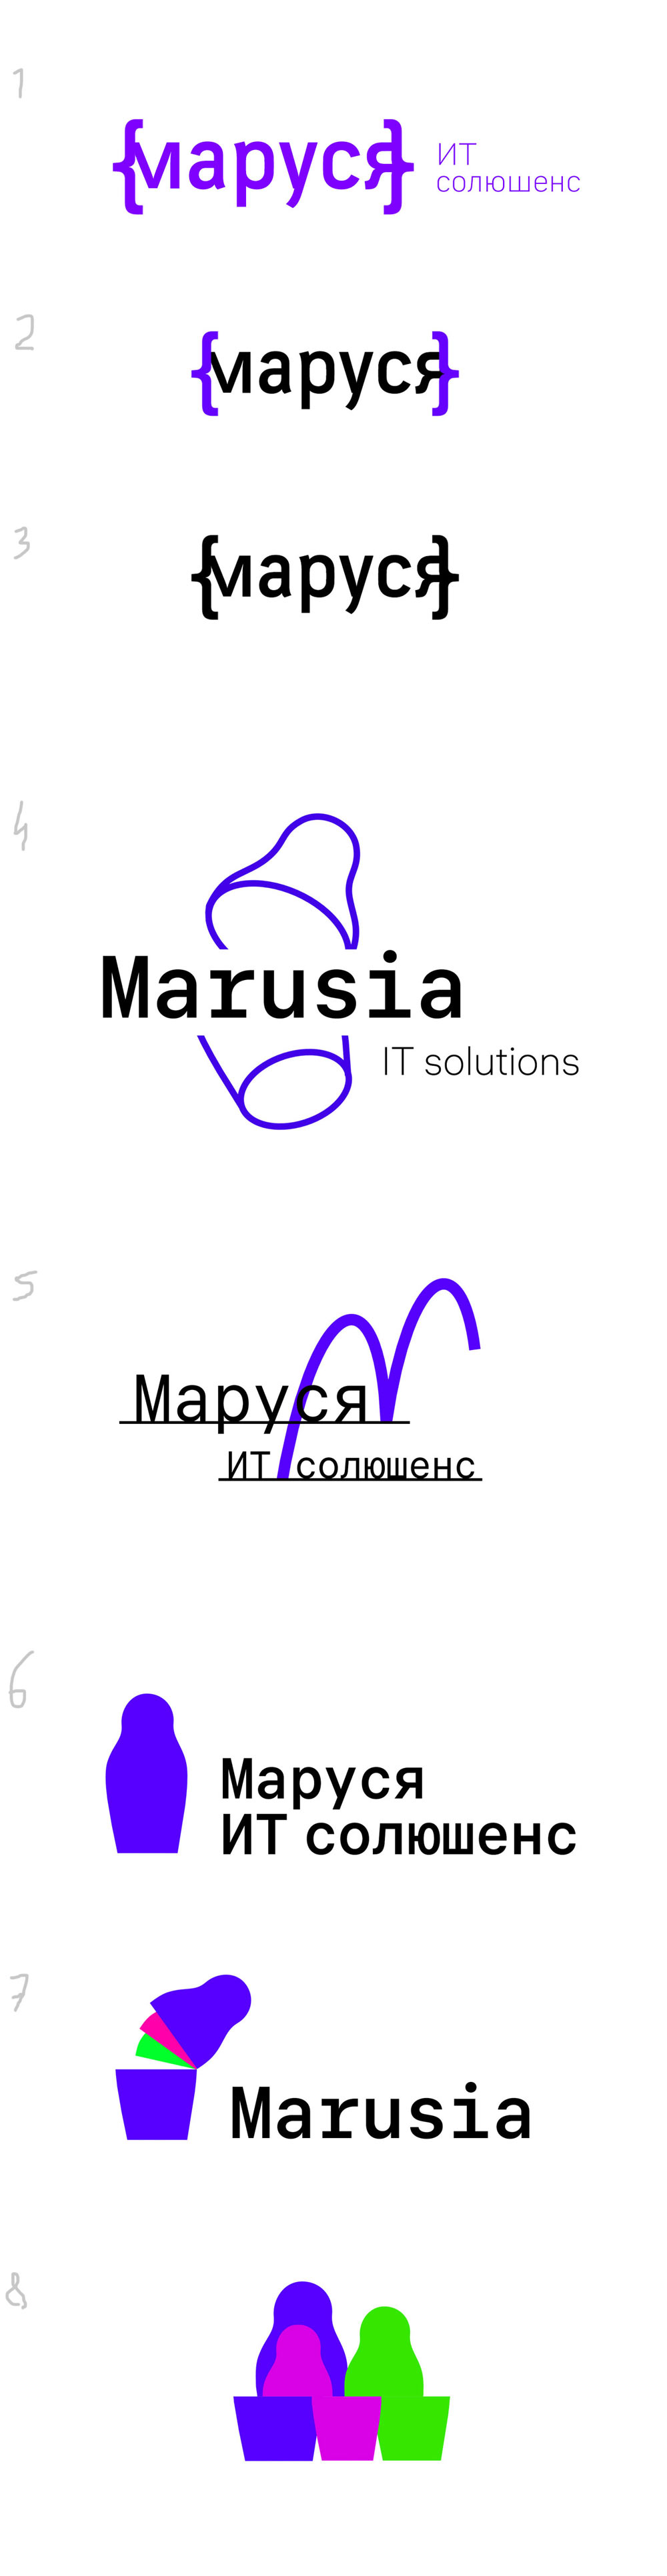 marusia process 10